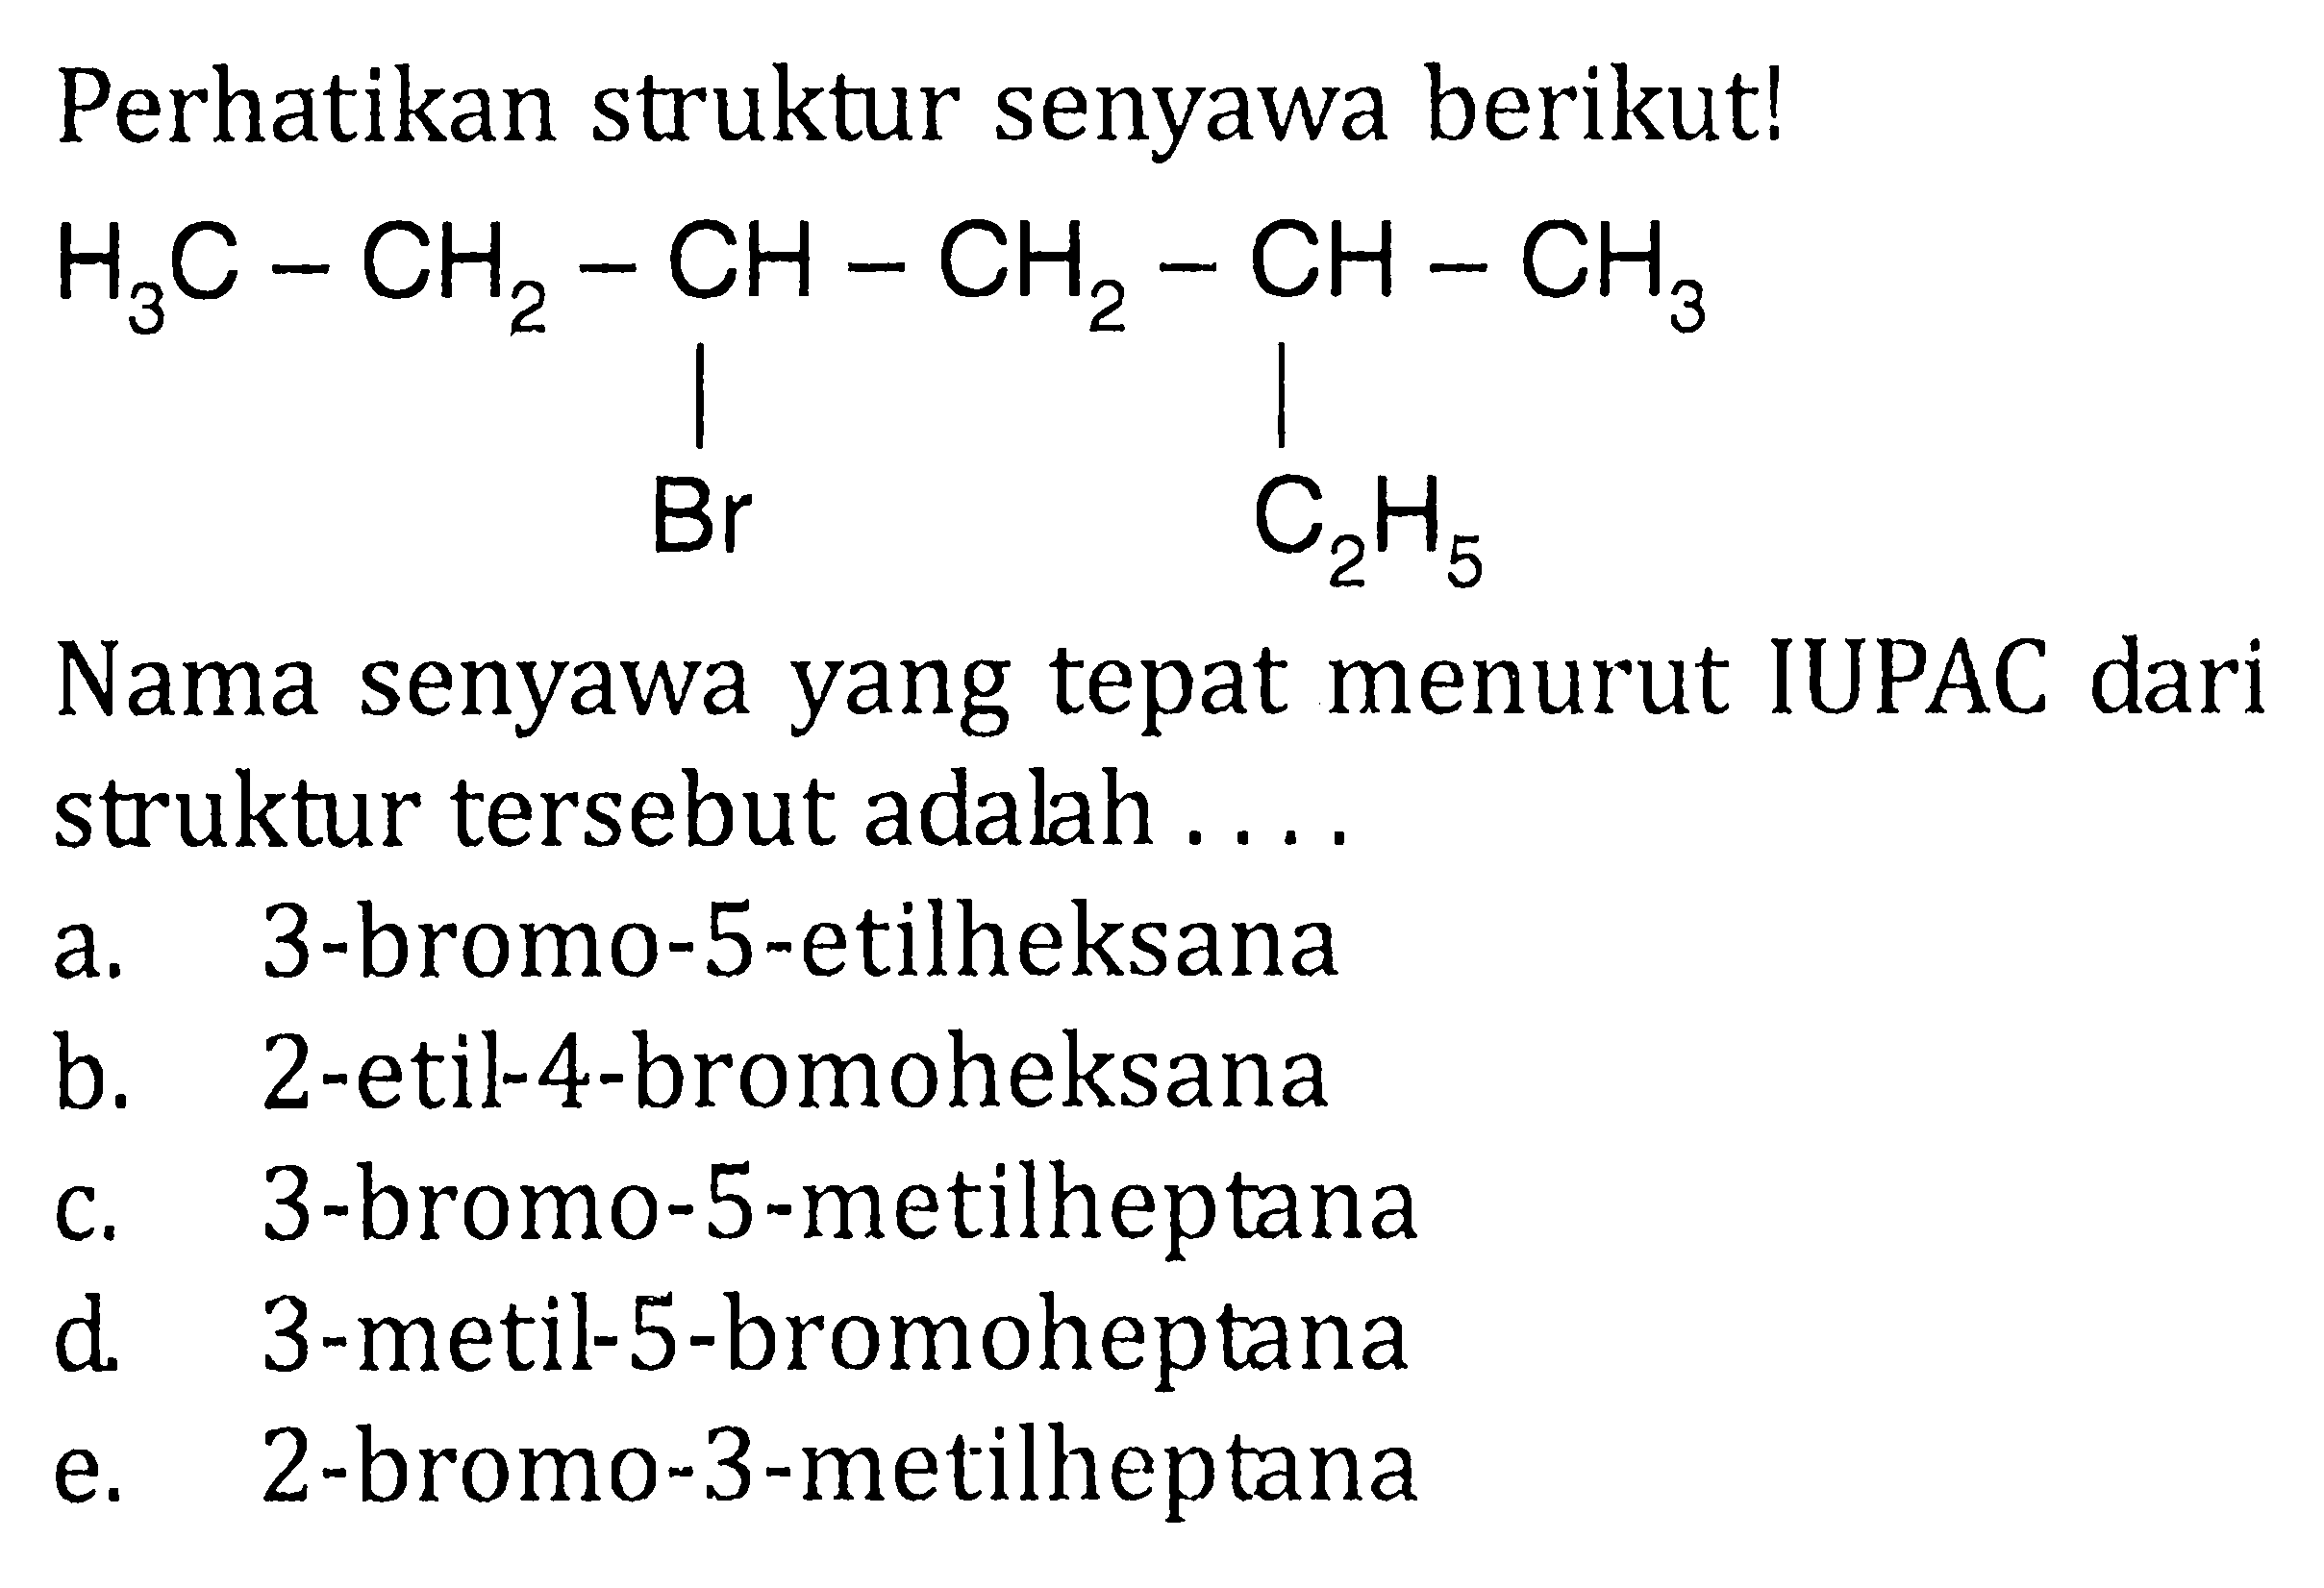 Perhatikan struktur senyawa berikut! H3C-CH2-CH-CH2-CH-CH3 Br C2H5 Nama senyawa yang tepat menurut IUPAC dari struktur tersebut adalah .... 